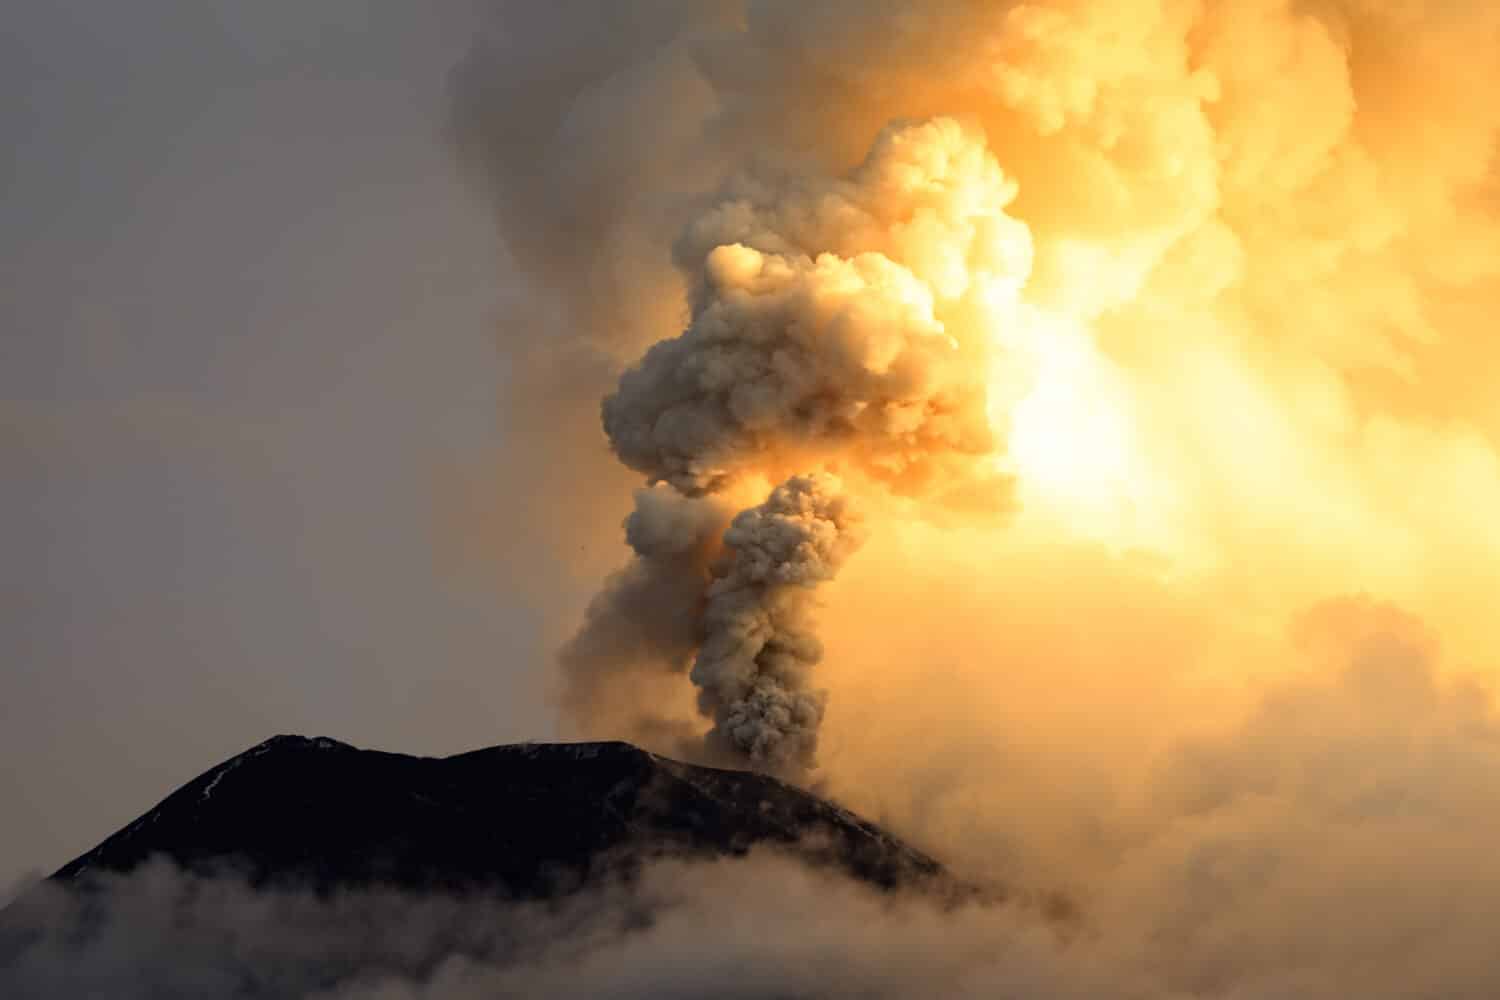 vulcano in eruzione cenere vulcanica fumo incredibile esplosione natura geologia mozzafiato vulcanica potente esplosione del vulcano tungurahua il 6 maggio 2013 ecuador sud america vulcano in eruzione cenere vulcanica